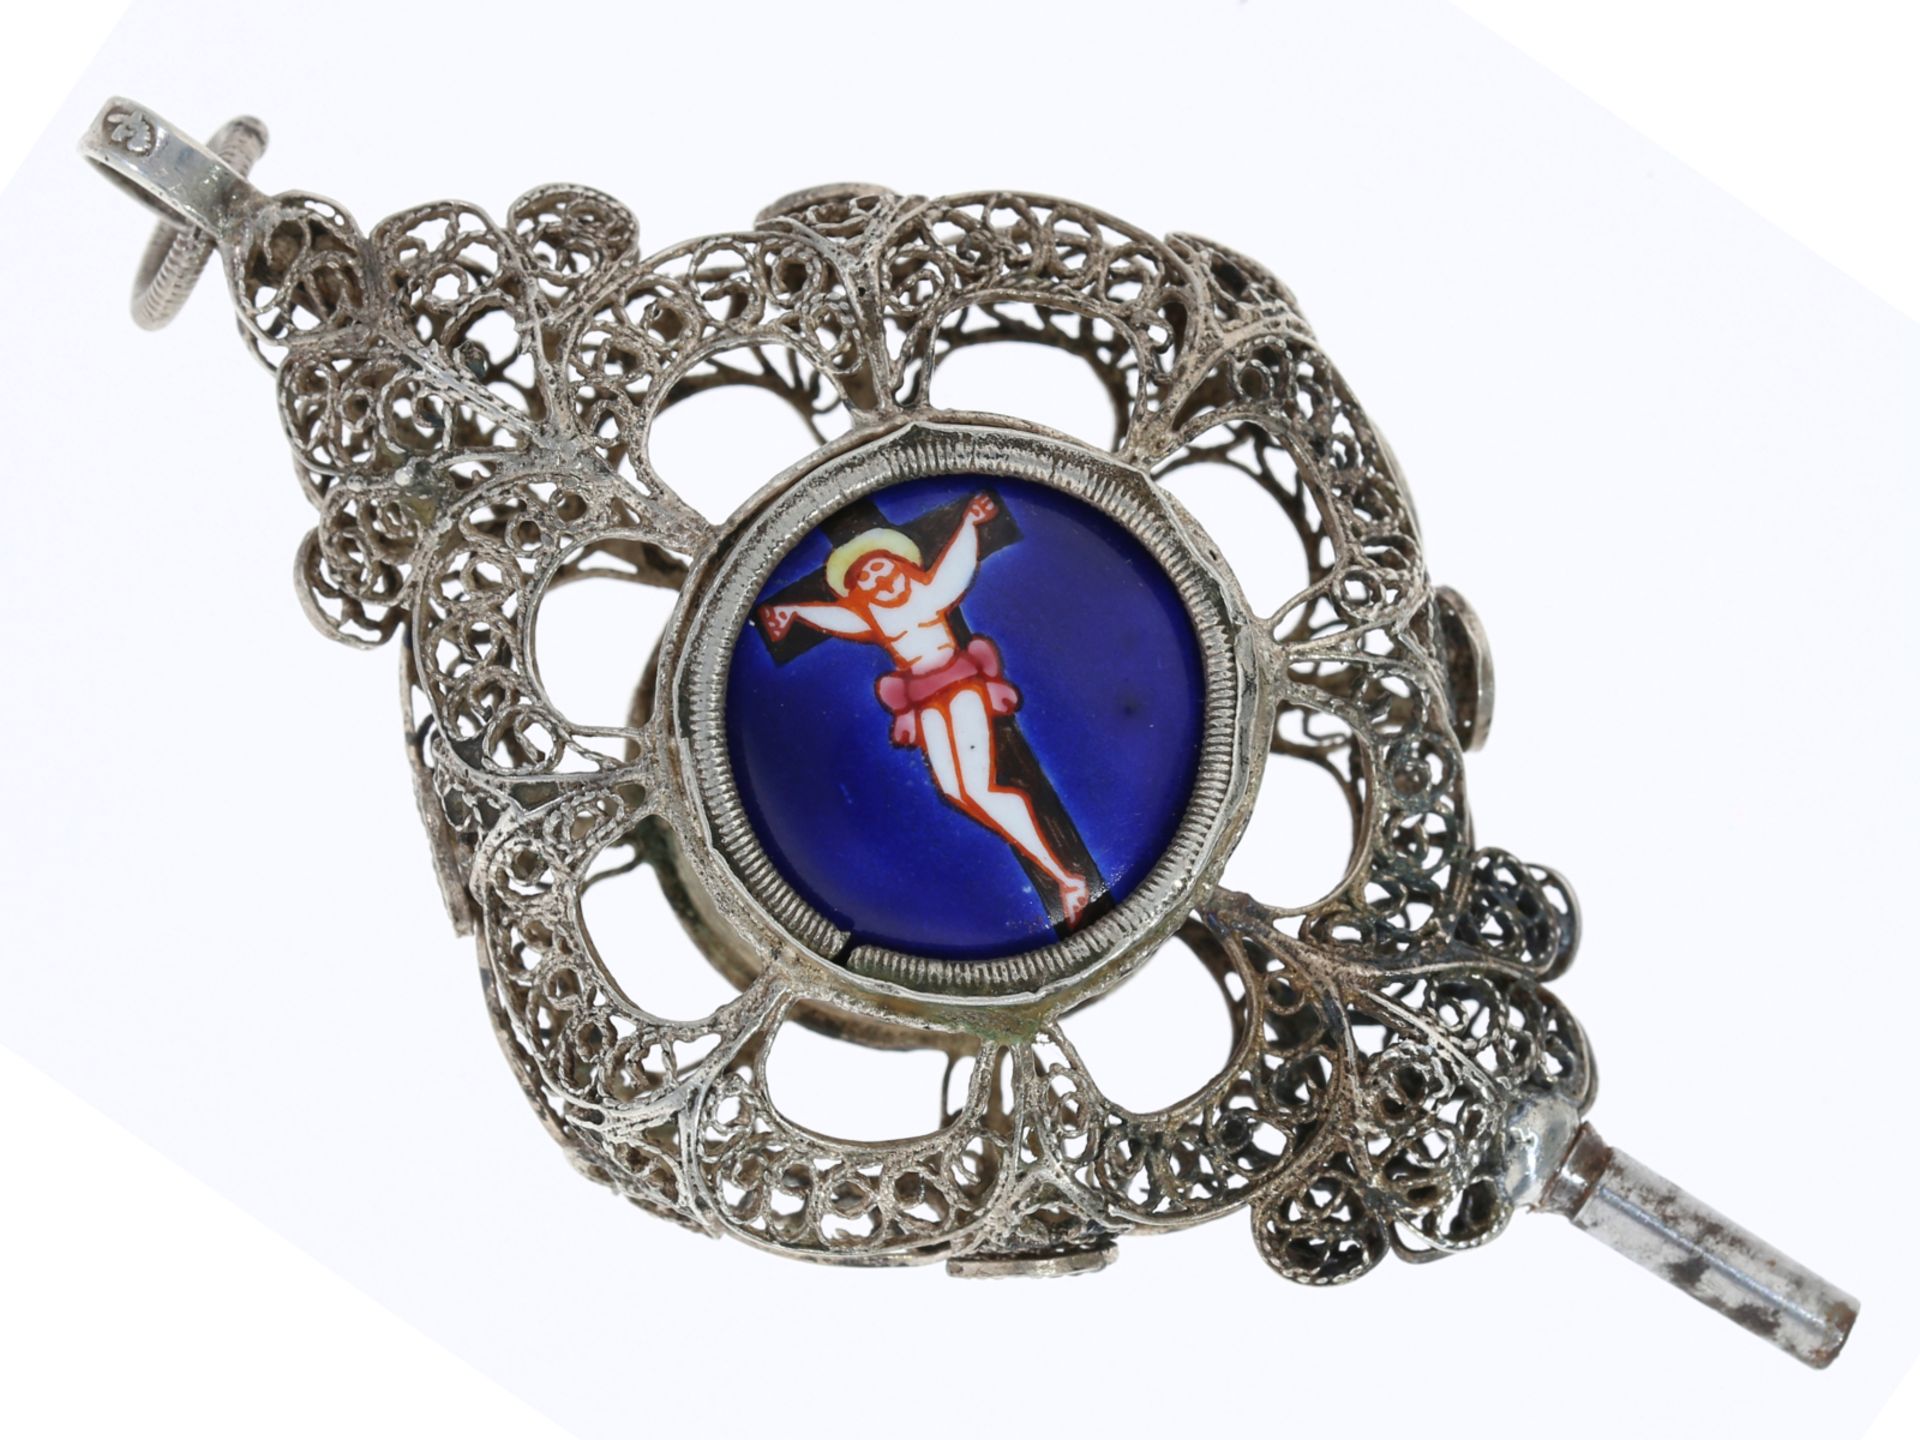 Einzigartiger, emaillierter Uhrenschlüssel mit Heiligen-Bildnis, vermutlich süddeutsch um 1800 - Image 2 of 2